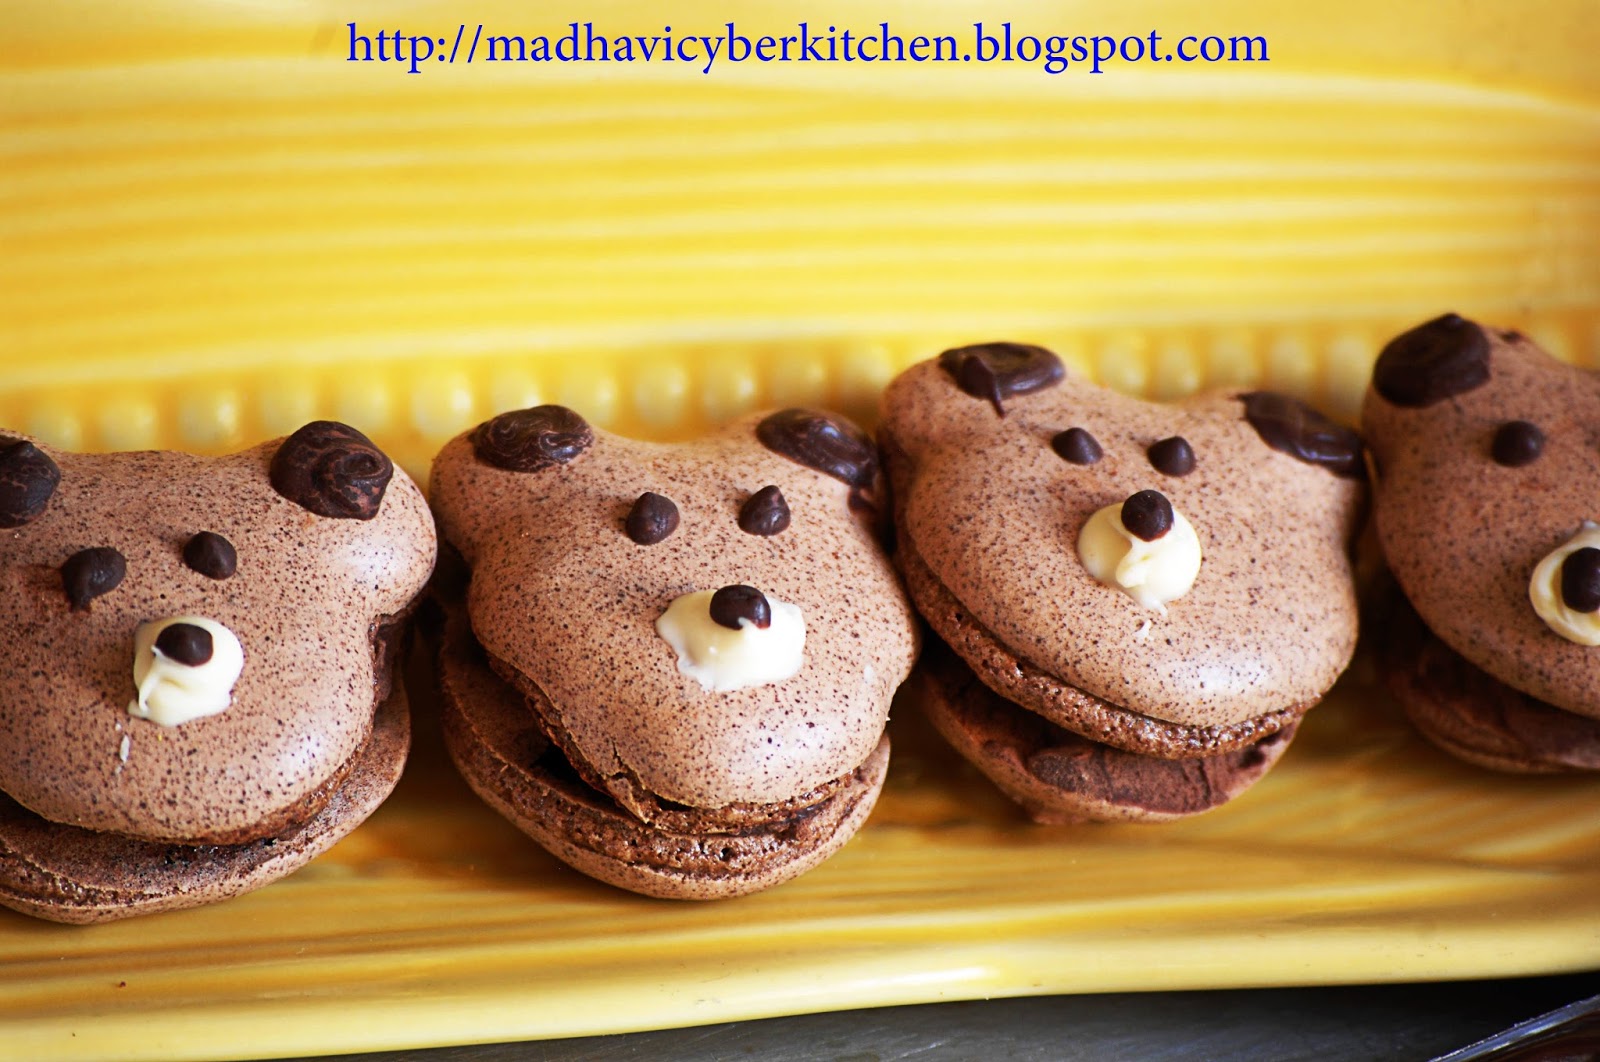 Madhavi's Cyber Kitchen: Vegan chocolate macarons